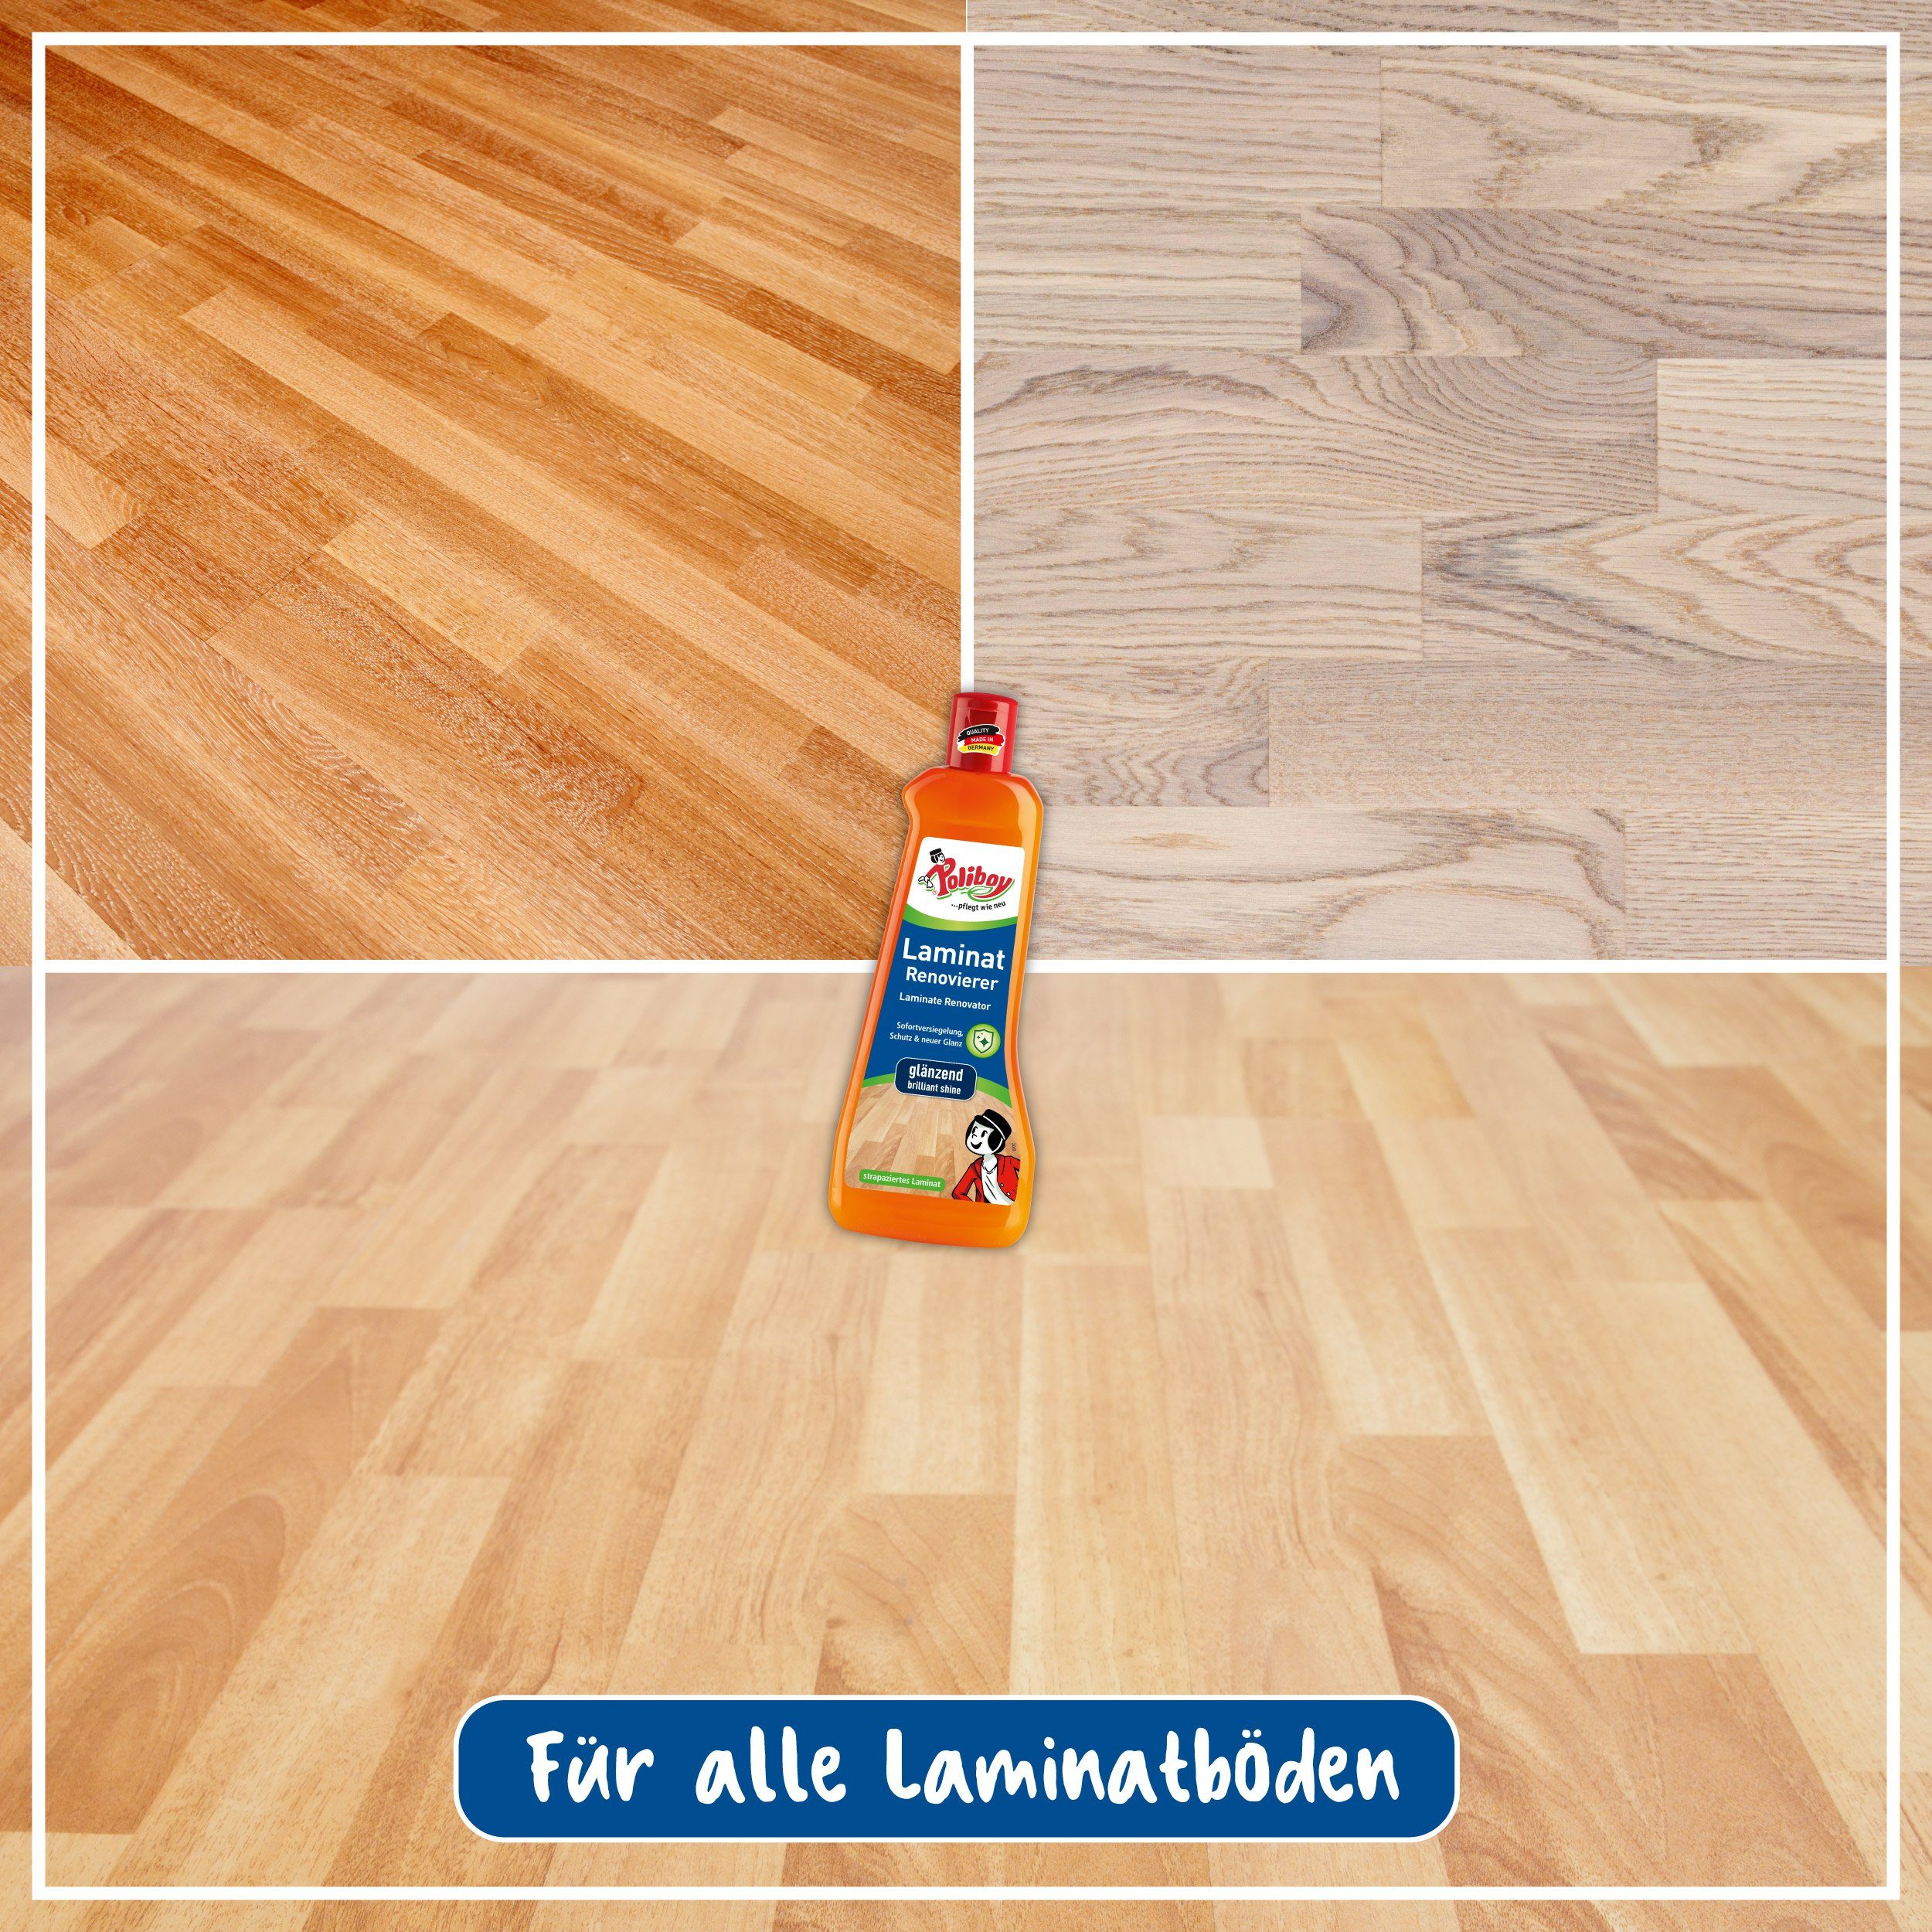 Made Laminat anhaltenden Versiegelung Schutz 5 poliboy Germany) - (lang Laminatböden Liter Laminatreiniger - - Sofort und für in - Renovierer Glanz